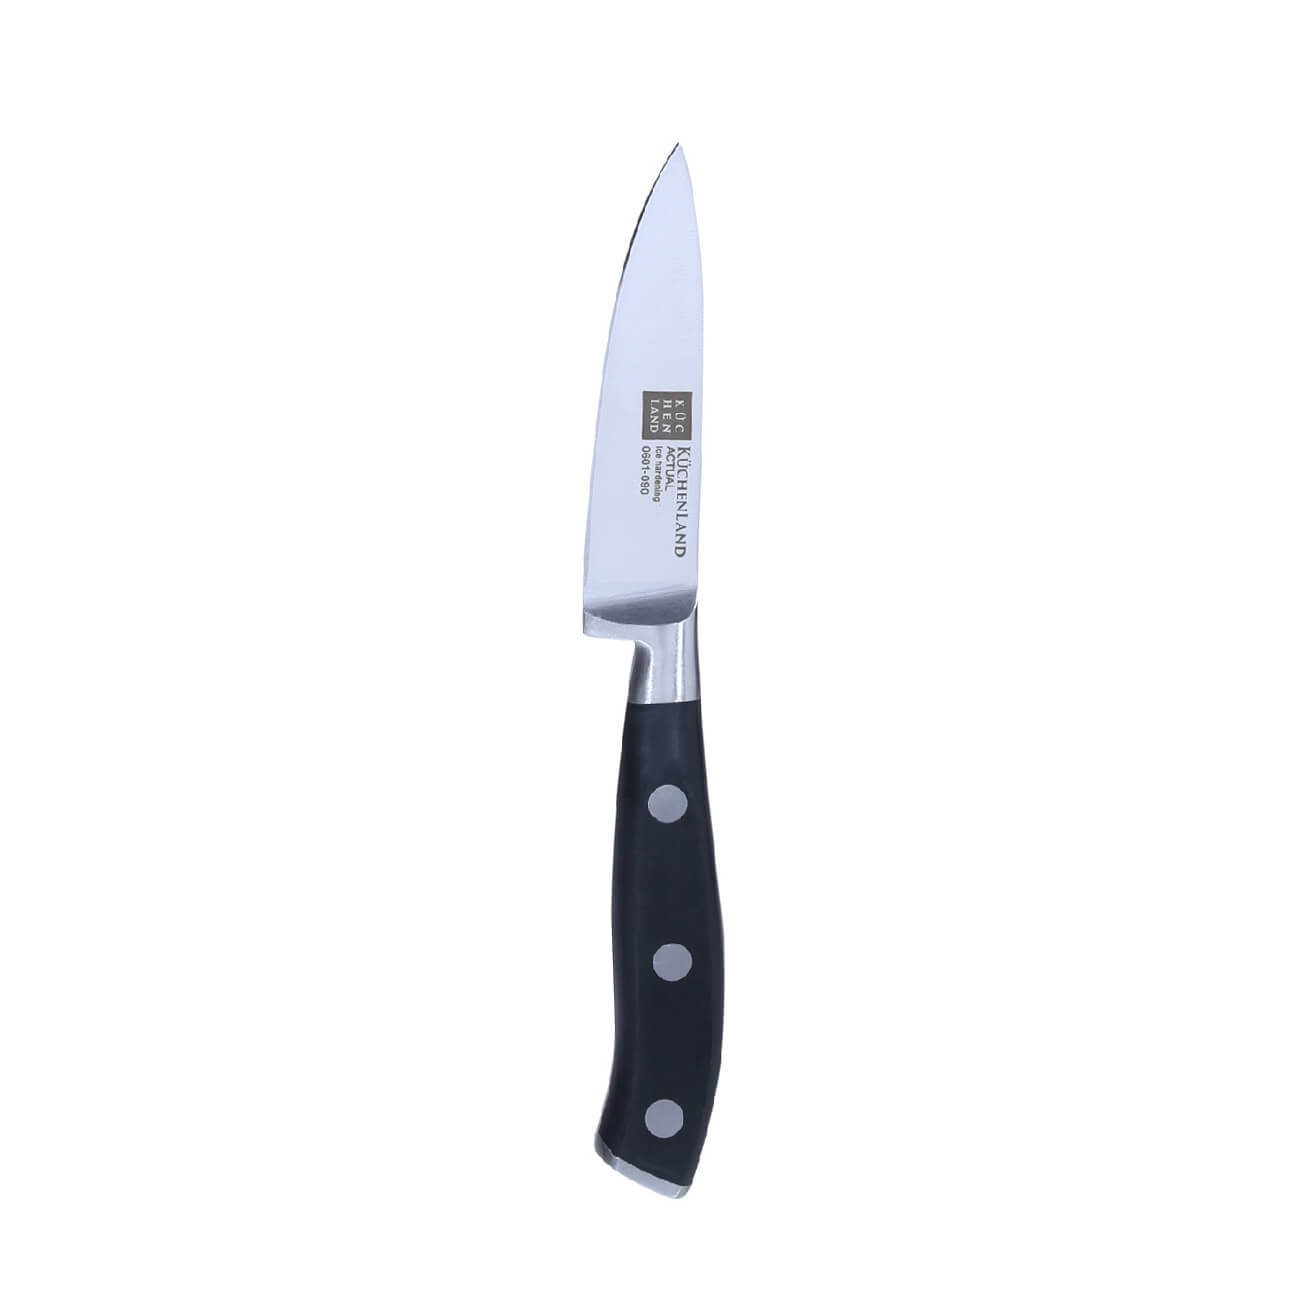 Kuchenland Нож для чистки овощей, 9 см, сталь/пластик, Actual